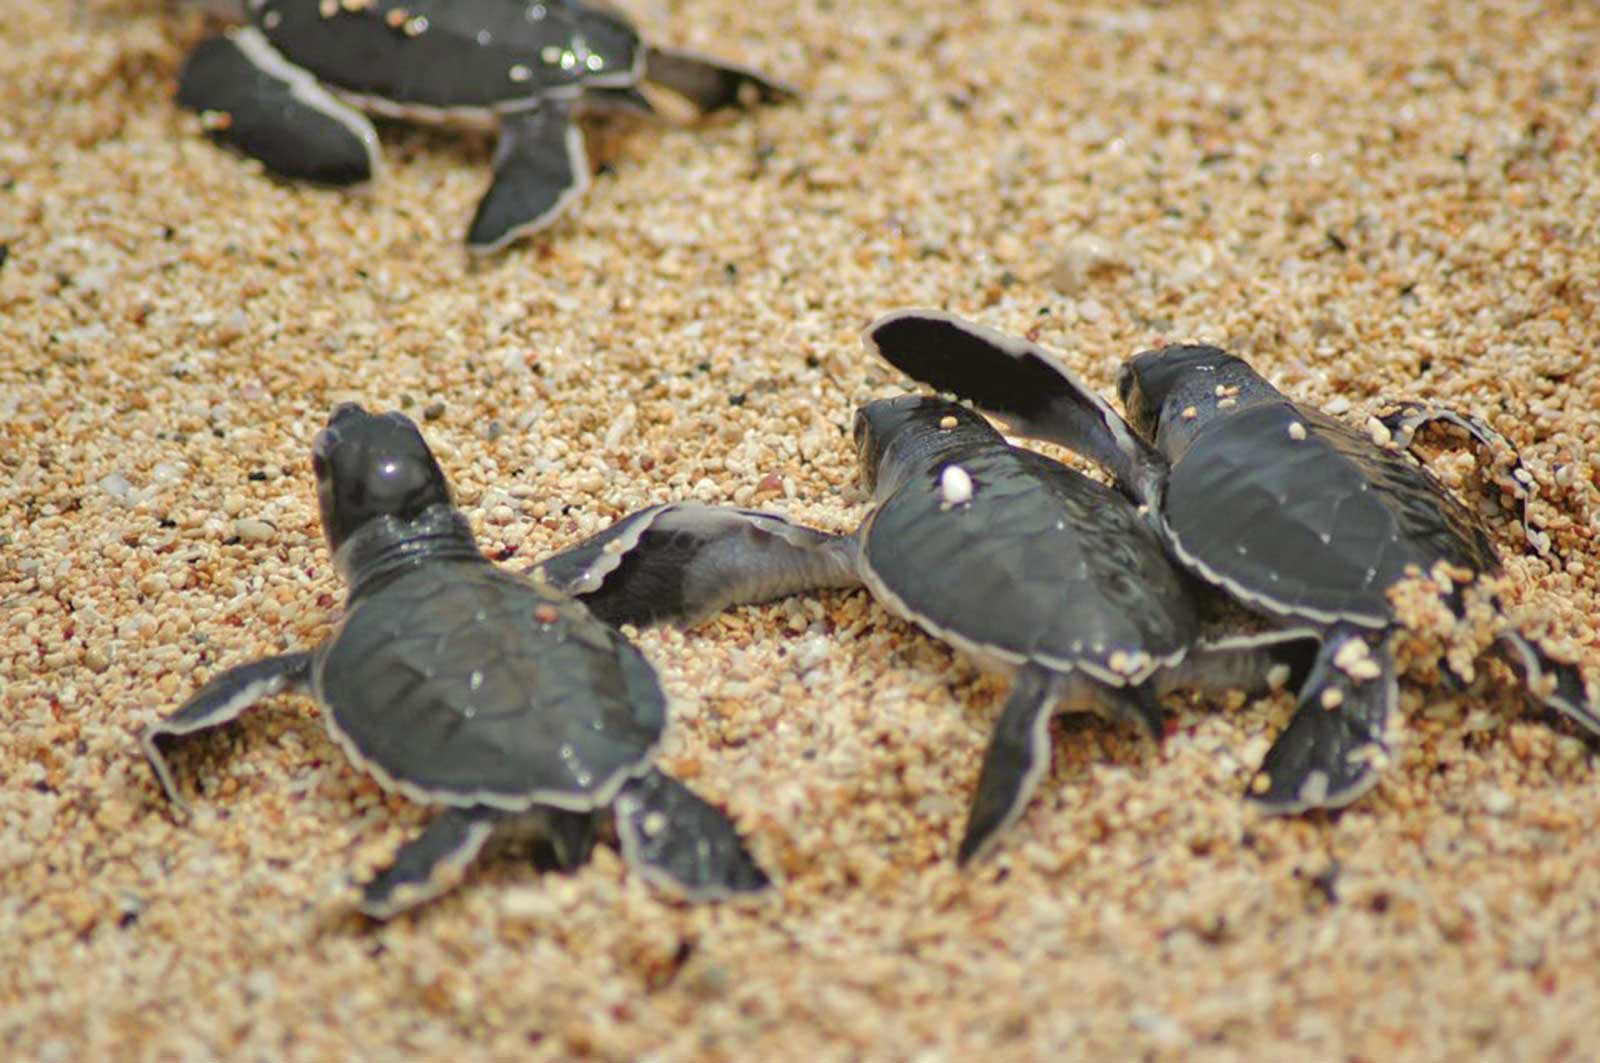 Sortie nocturne pour aller à l’encontre des tortues et de surveiller la ponte sur les plages de l’île de Principe entre septembre et avril